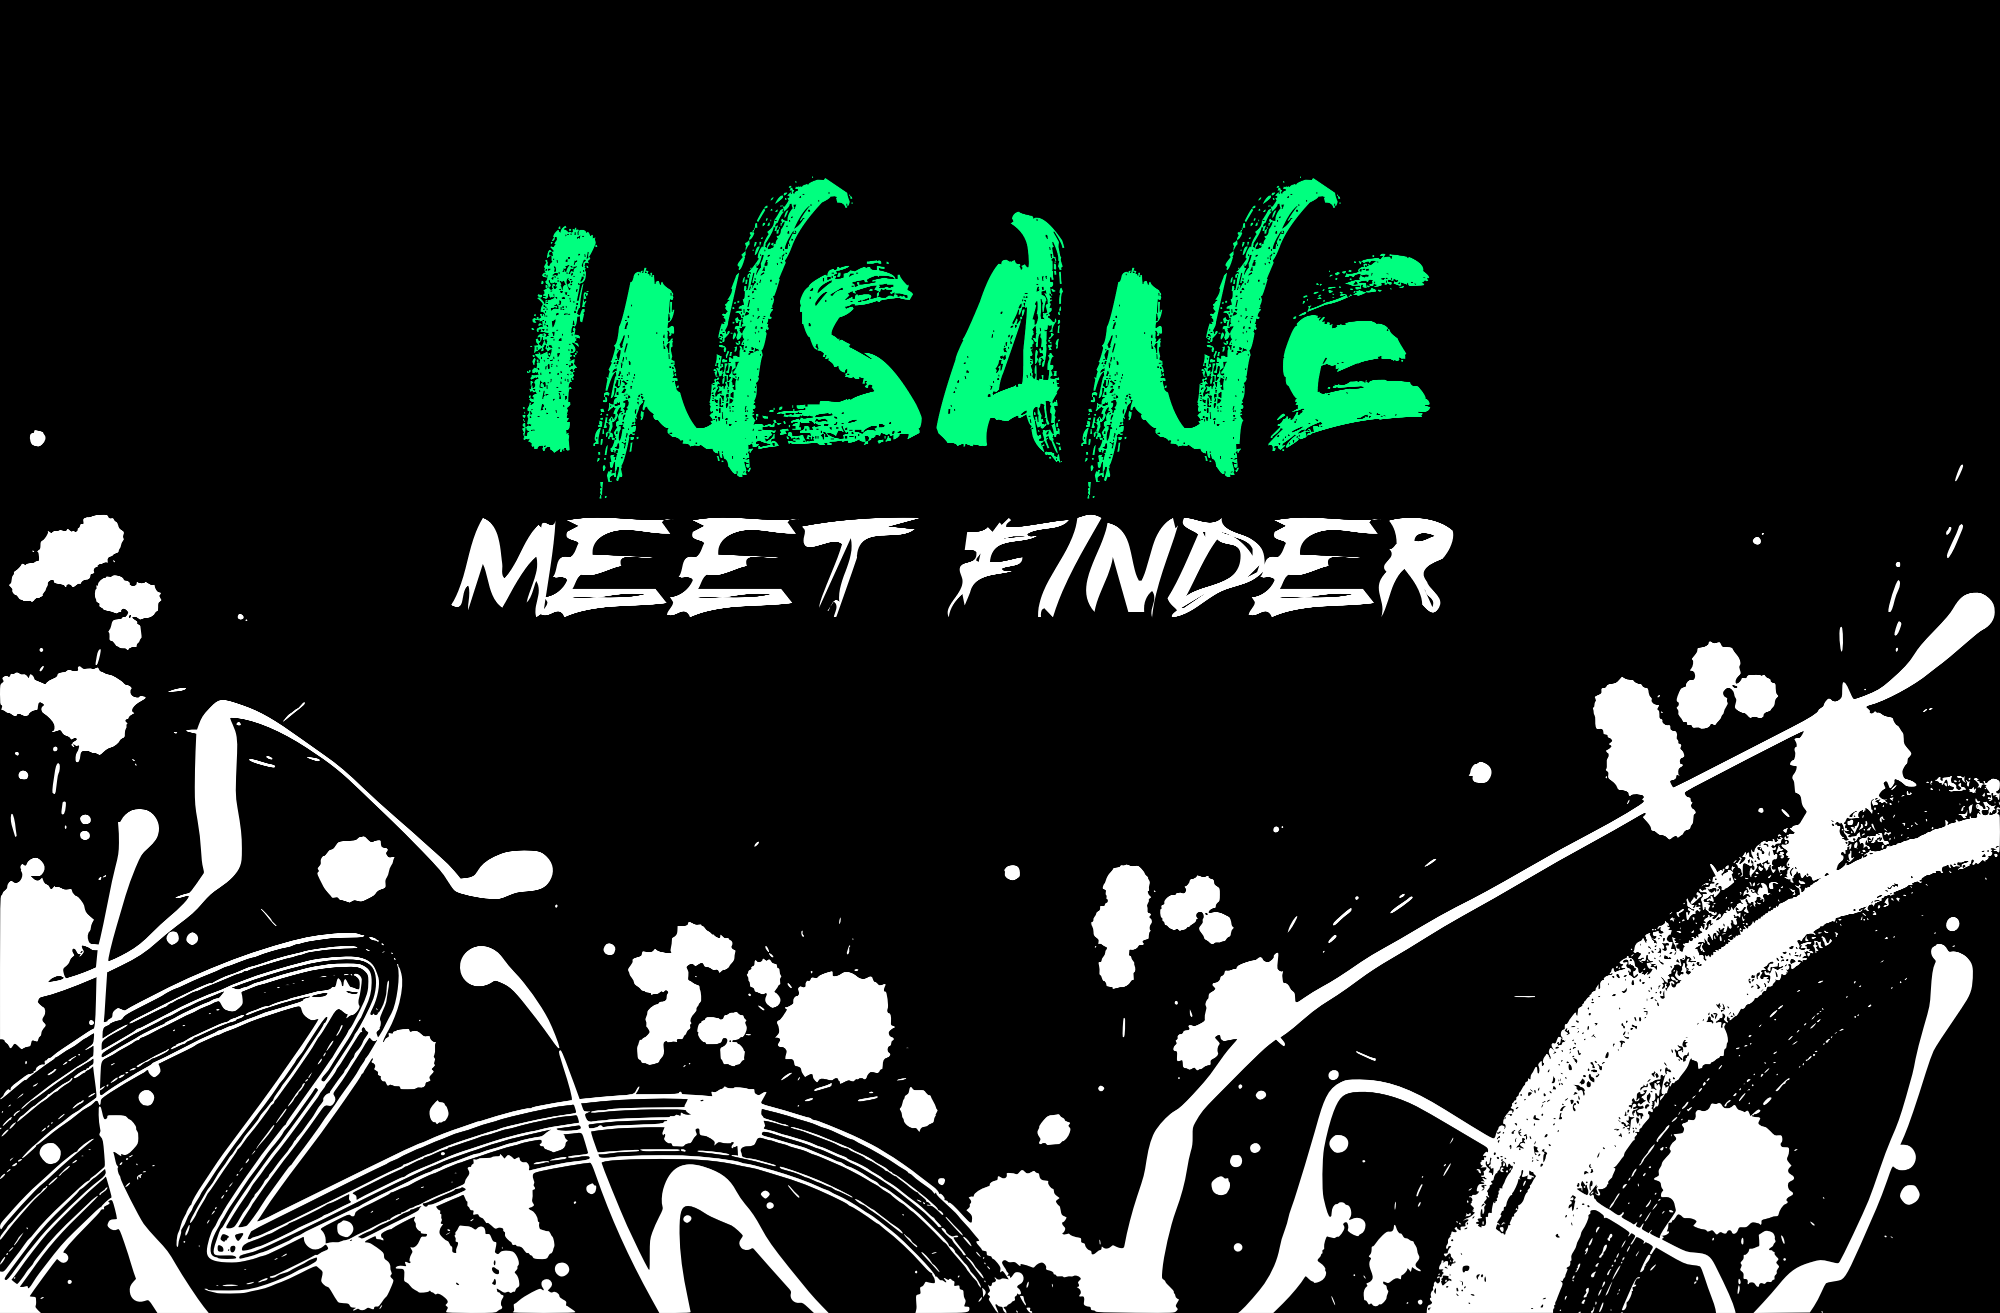 Update on Insane Meet Finder